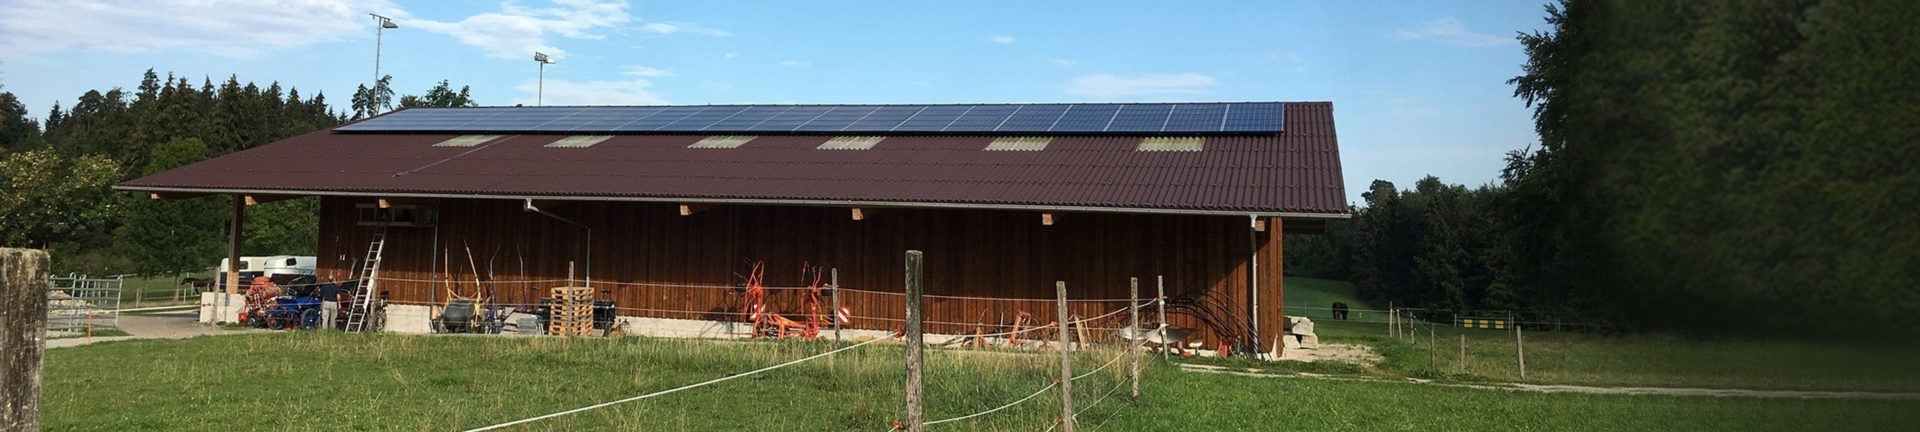 Pferdepension in Gutenswil mit neuer Photovoltaik-Anlage auf Remisendach Featured Image